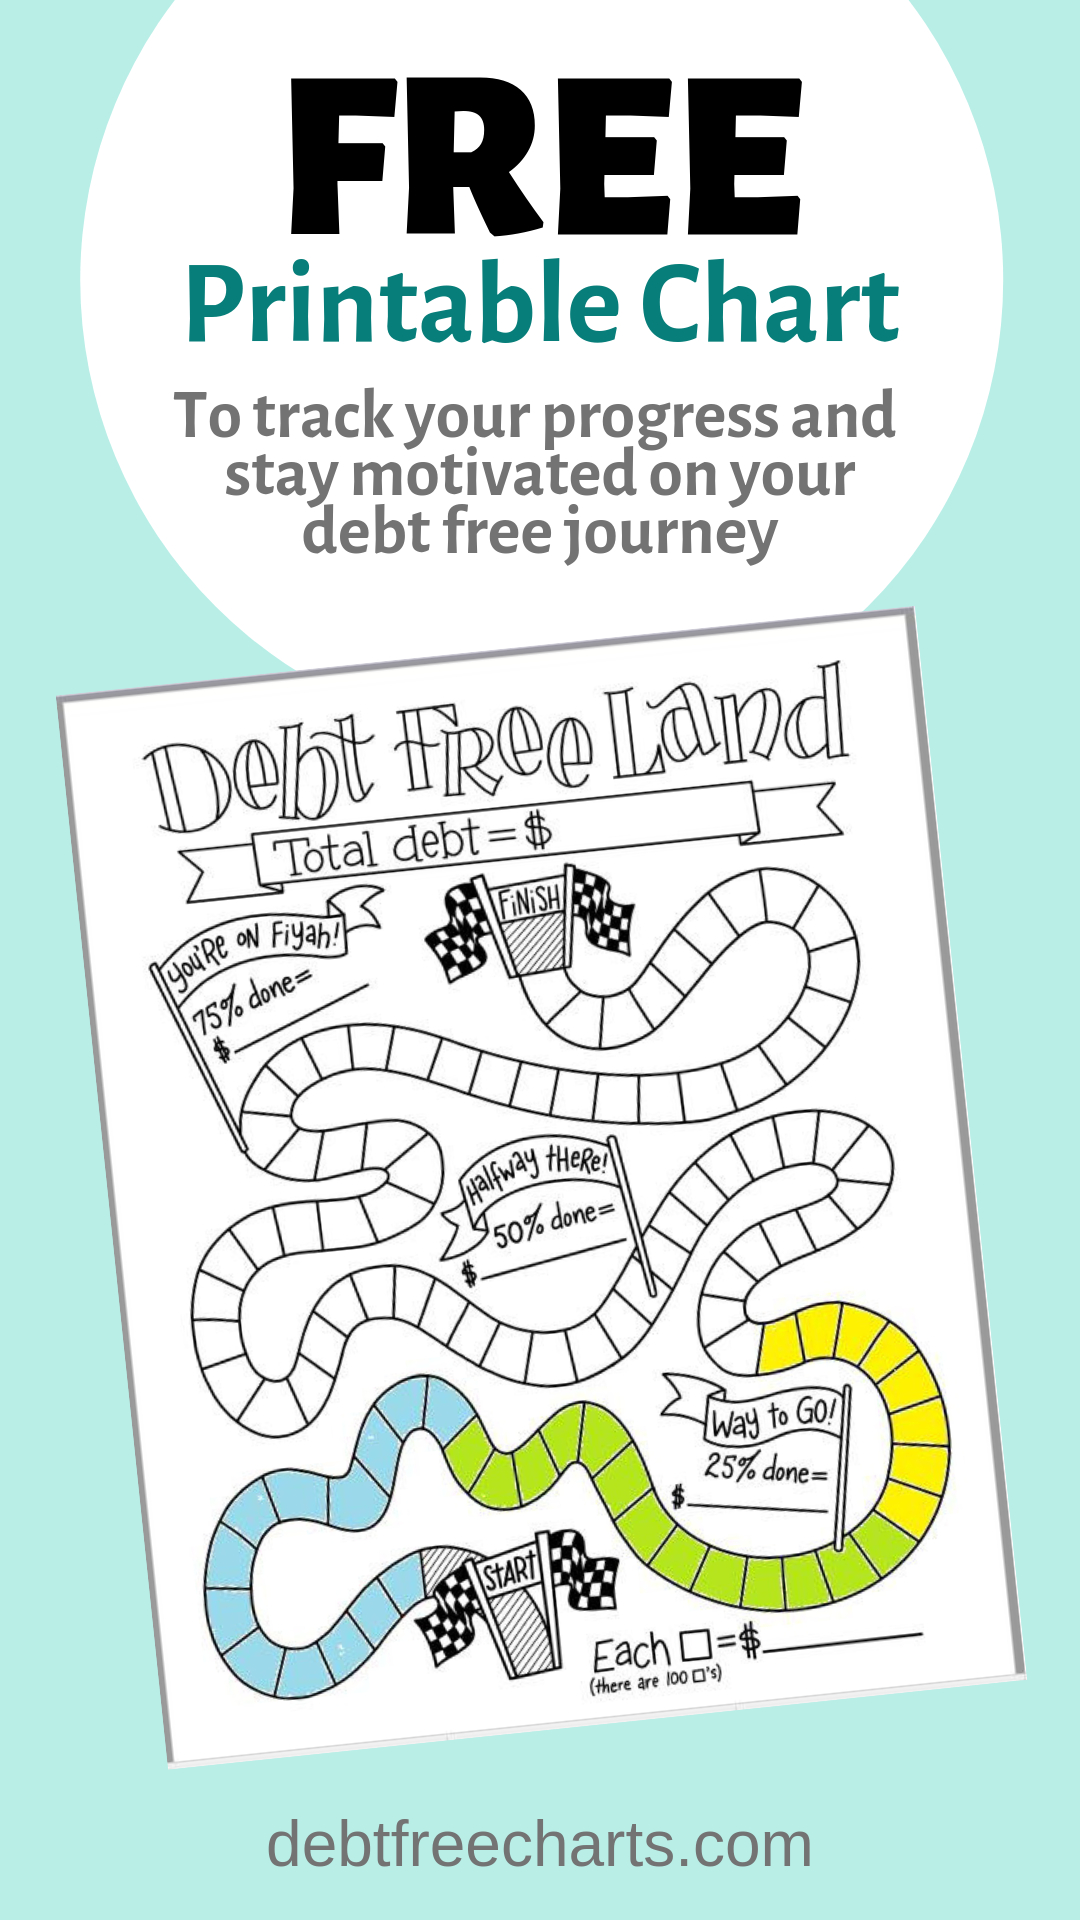 Debt Free Land Free Printable Chart | Debt Free, Credit Card Debt inside Free Printable Debt Free Charts